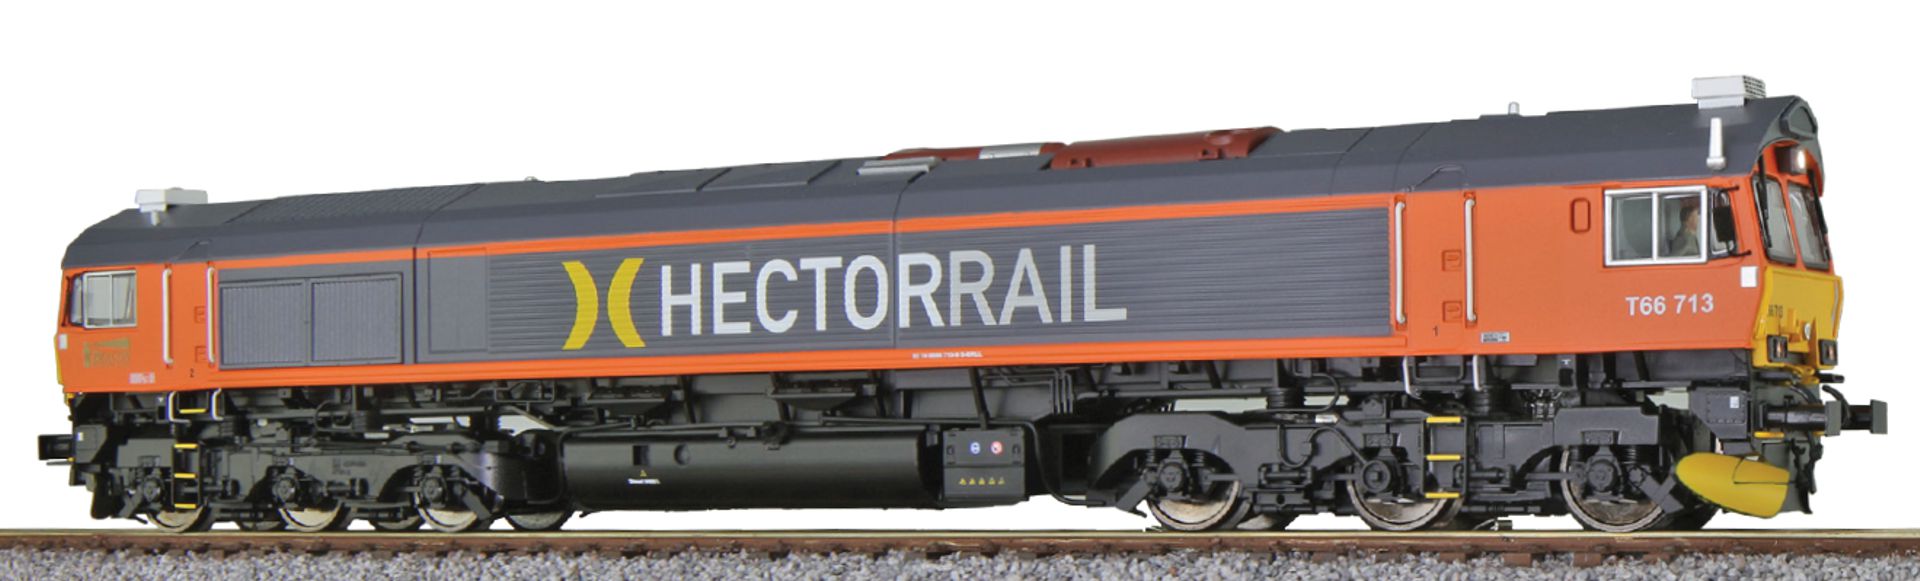 ESU 31284 - Diesellok Class 66 T66 713, Hectorrail, Ep.VI, DC+AC-Sound